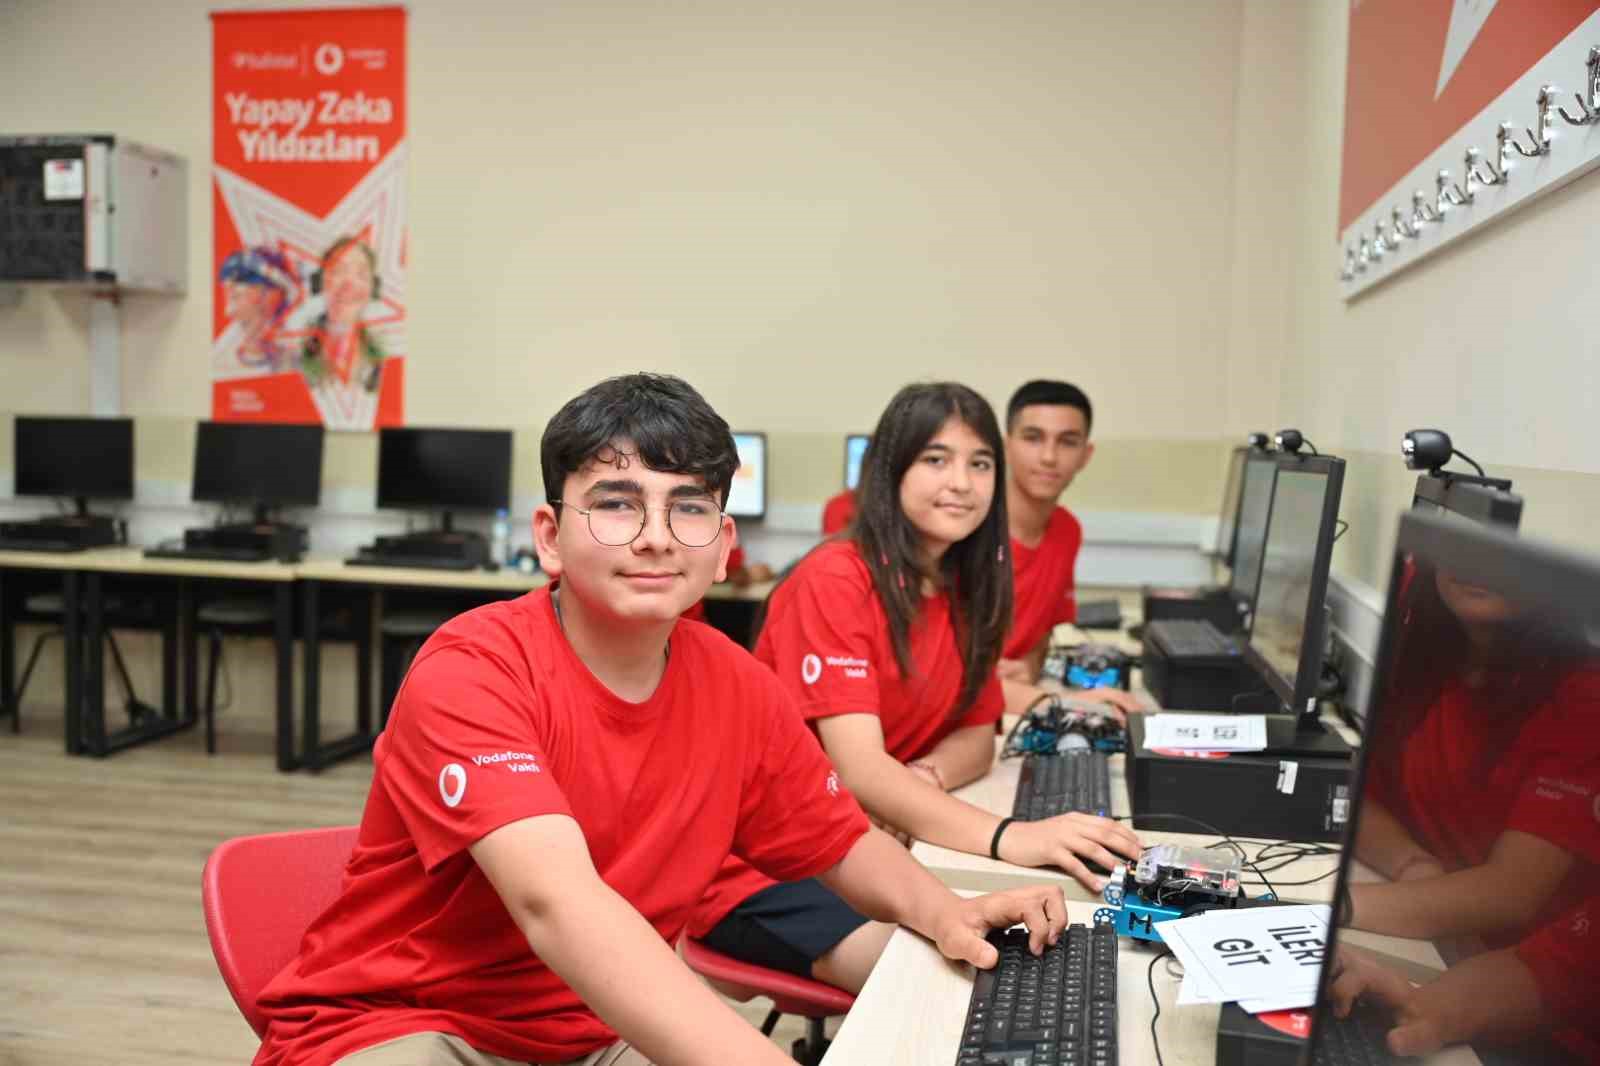 Vodafone Vakfı ve Habitat Derneği’nden gençler için ‘yapay zeka’ projesi